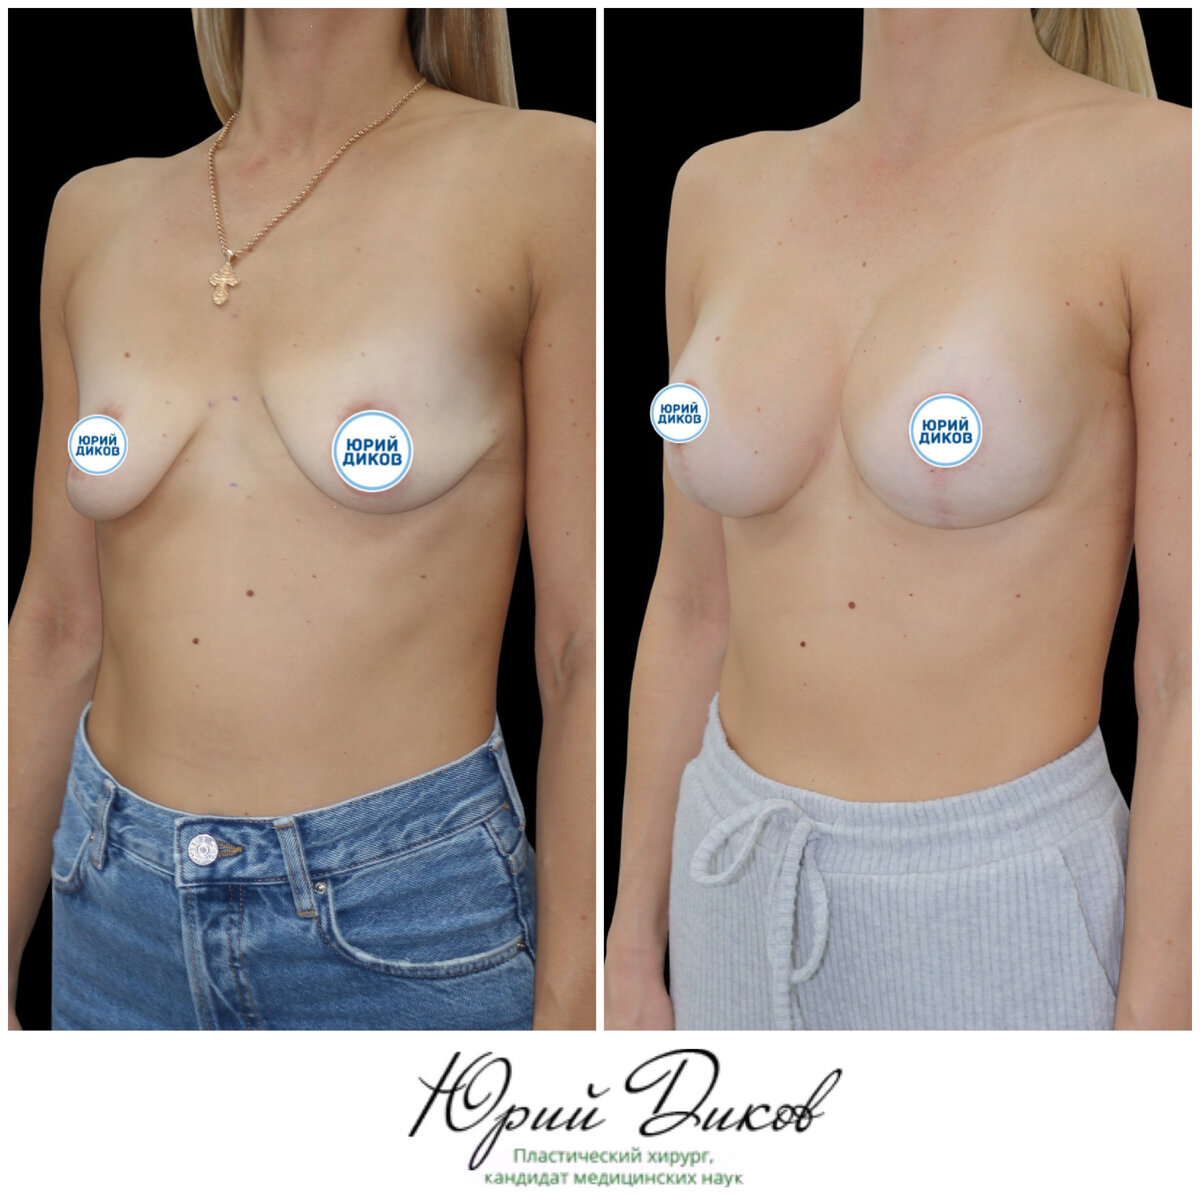 импланты для груди третьего размера фото 80